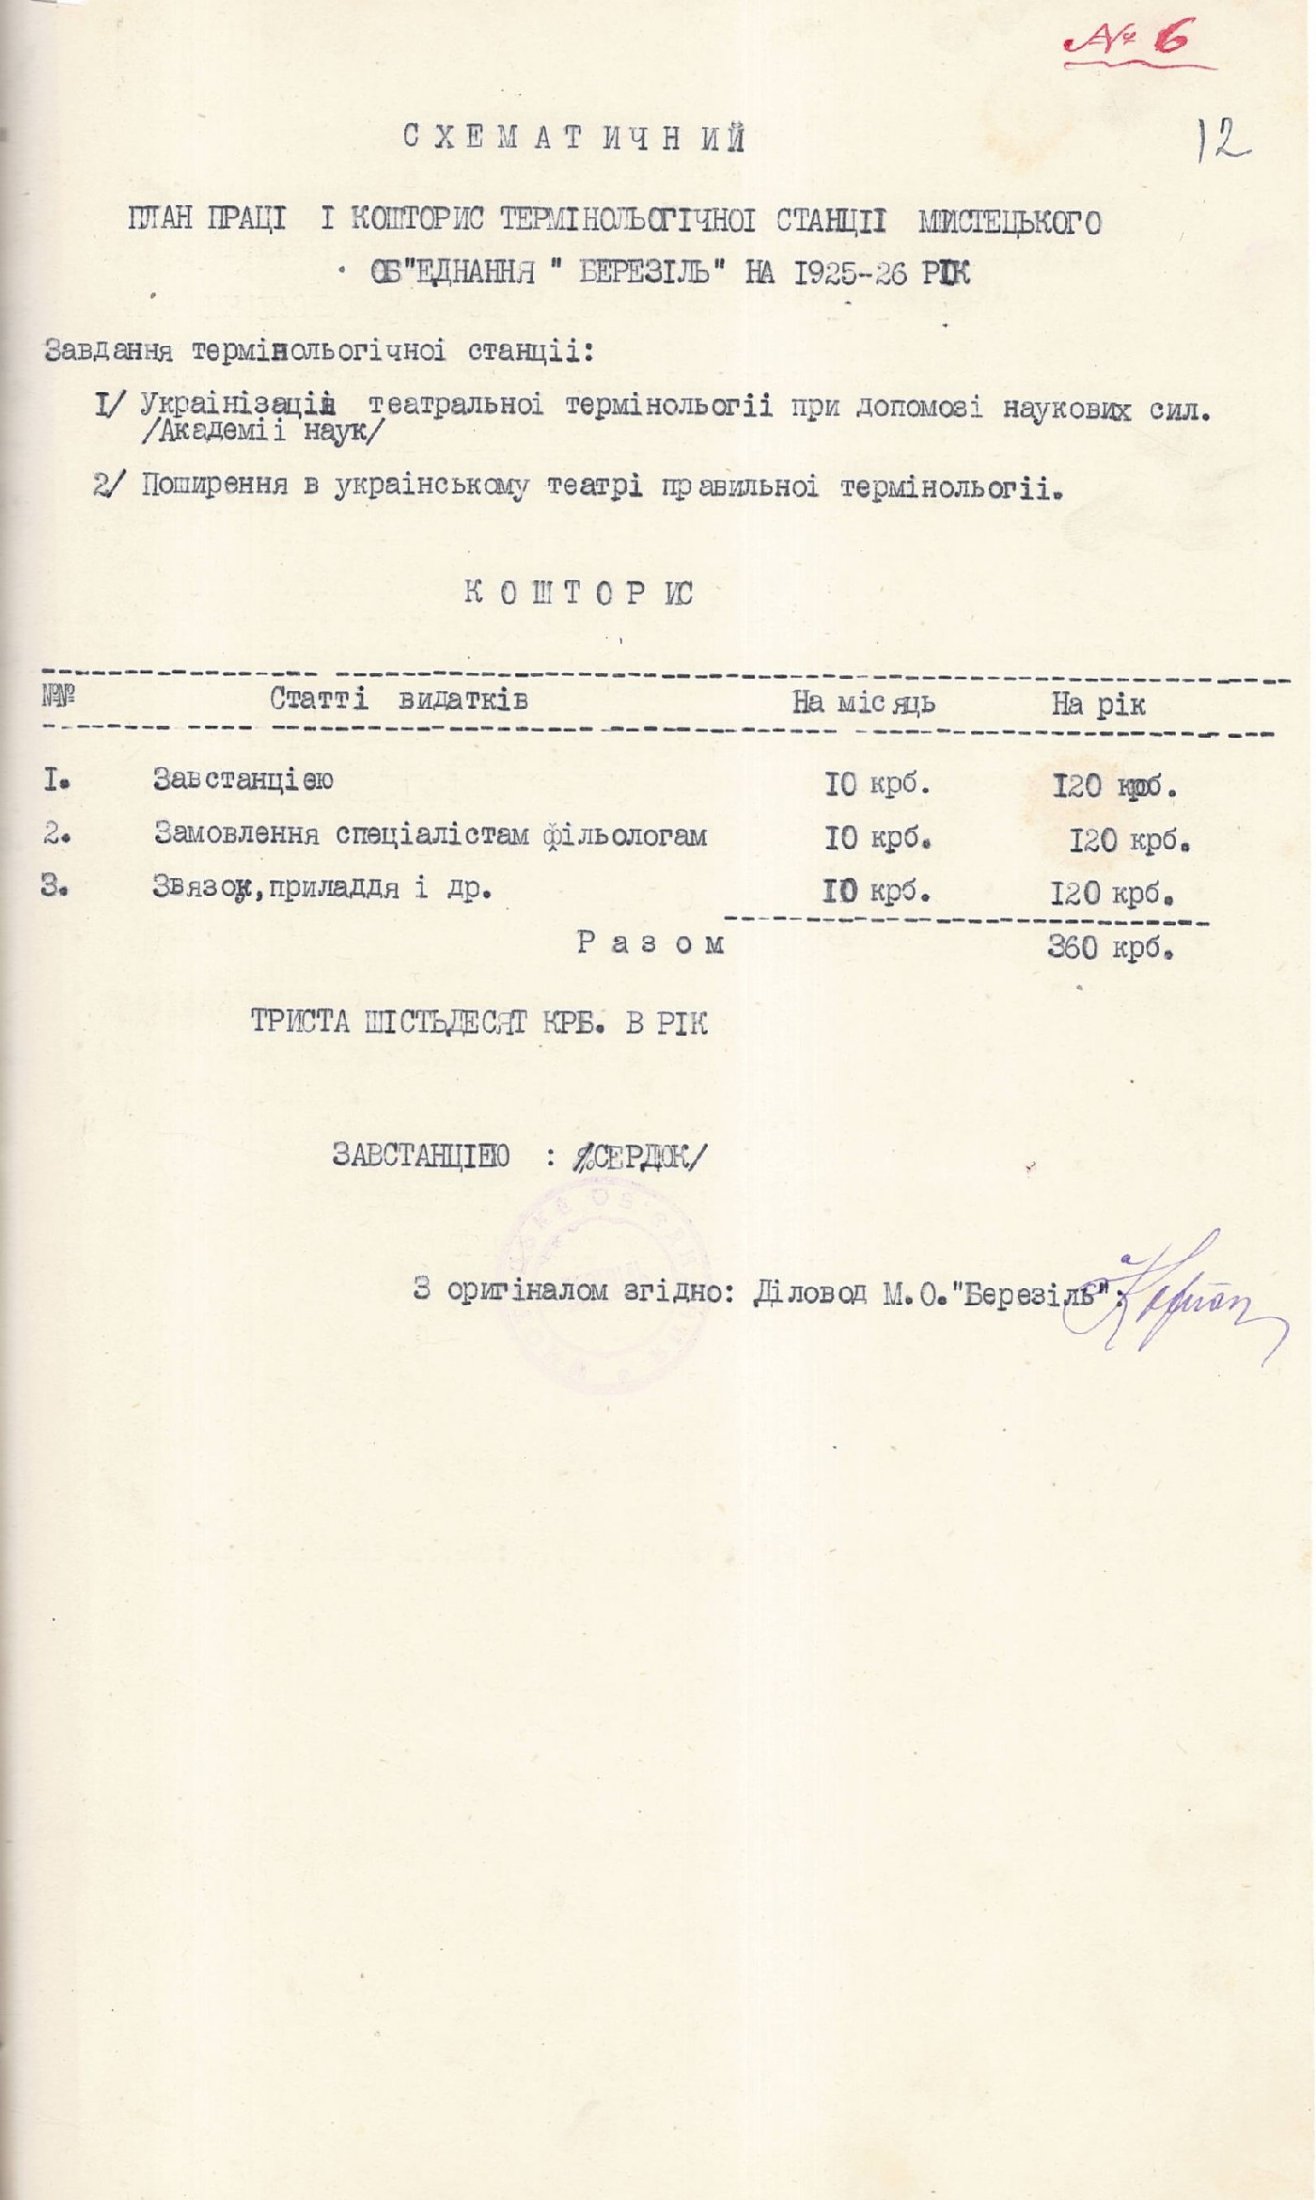 План роботи і кошторис термінологічної станції мистецького об’єднання «Березіль» на 1925-1926 рік. Без дати.